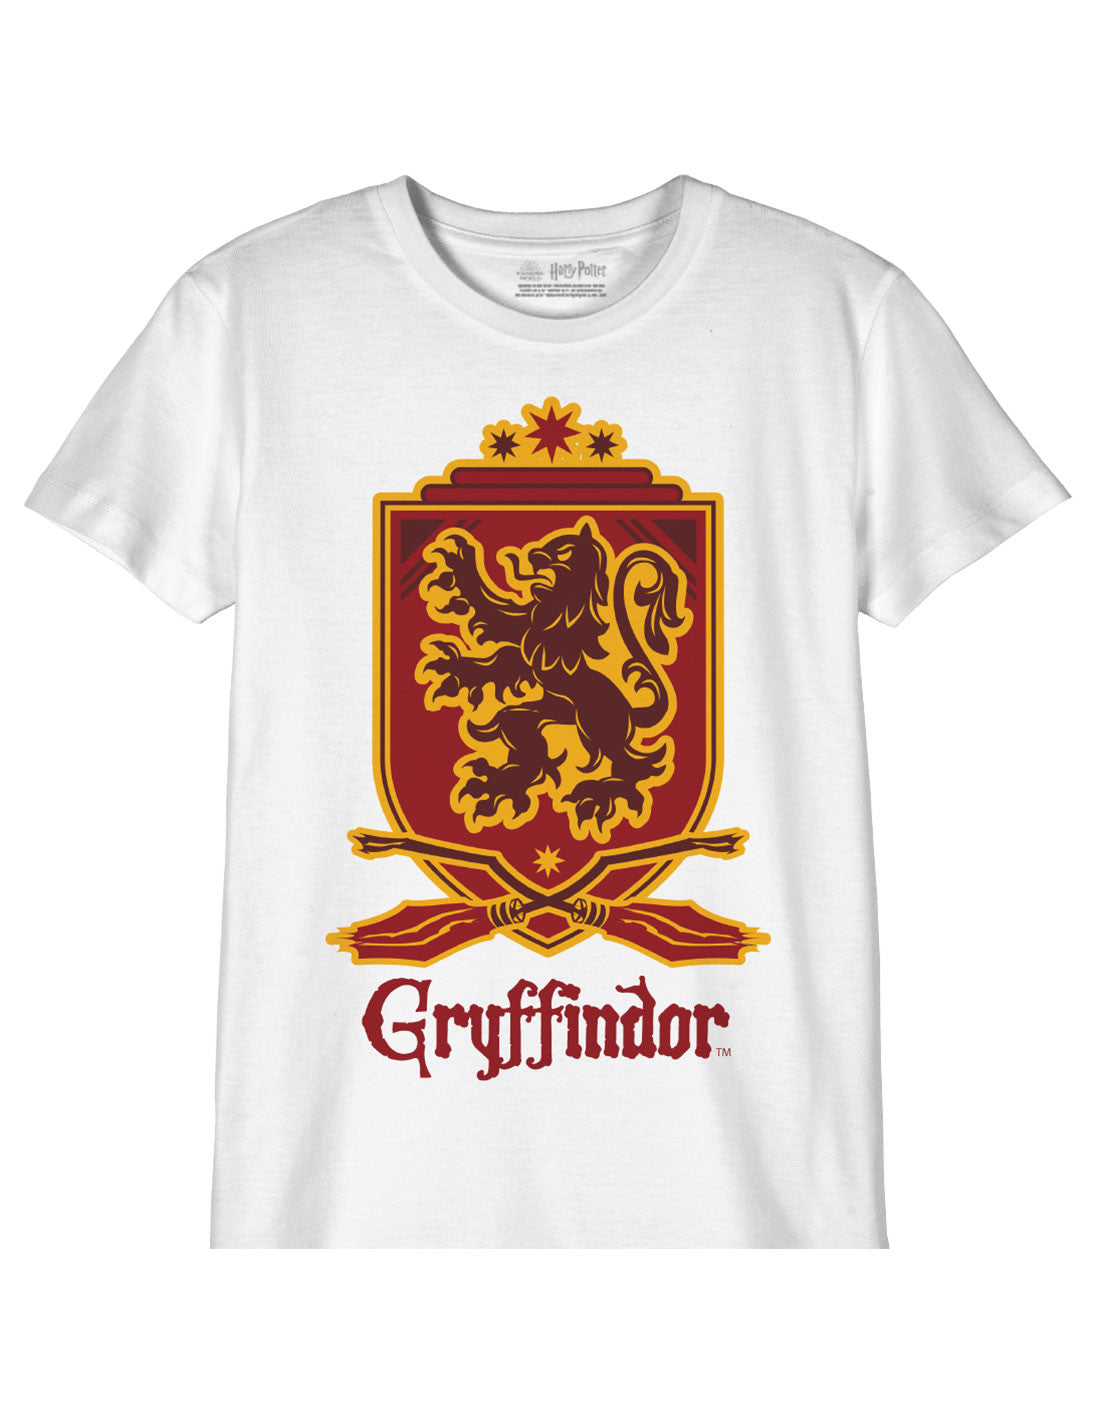 Harry Potter Kids T-shirt - Gryffindor Gold